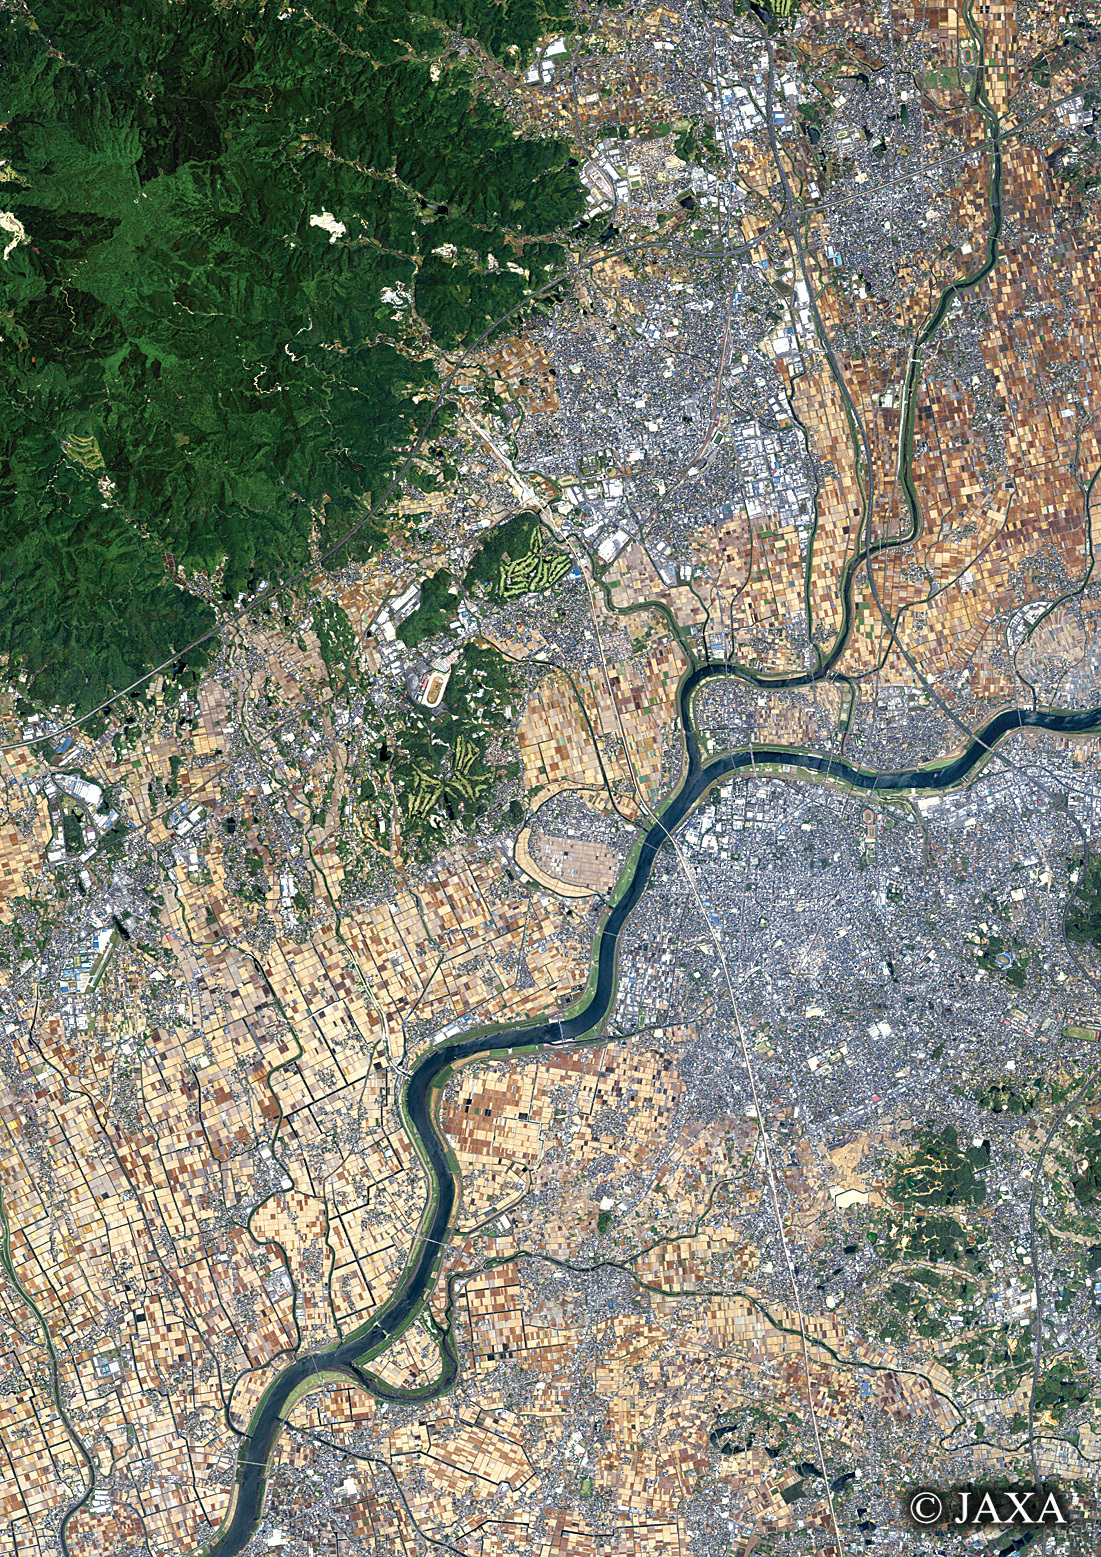 だいちから見た日本の都市 鳥栖市:衛星画像